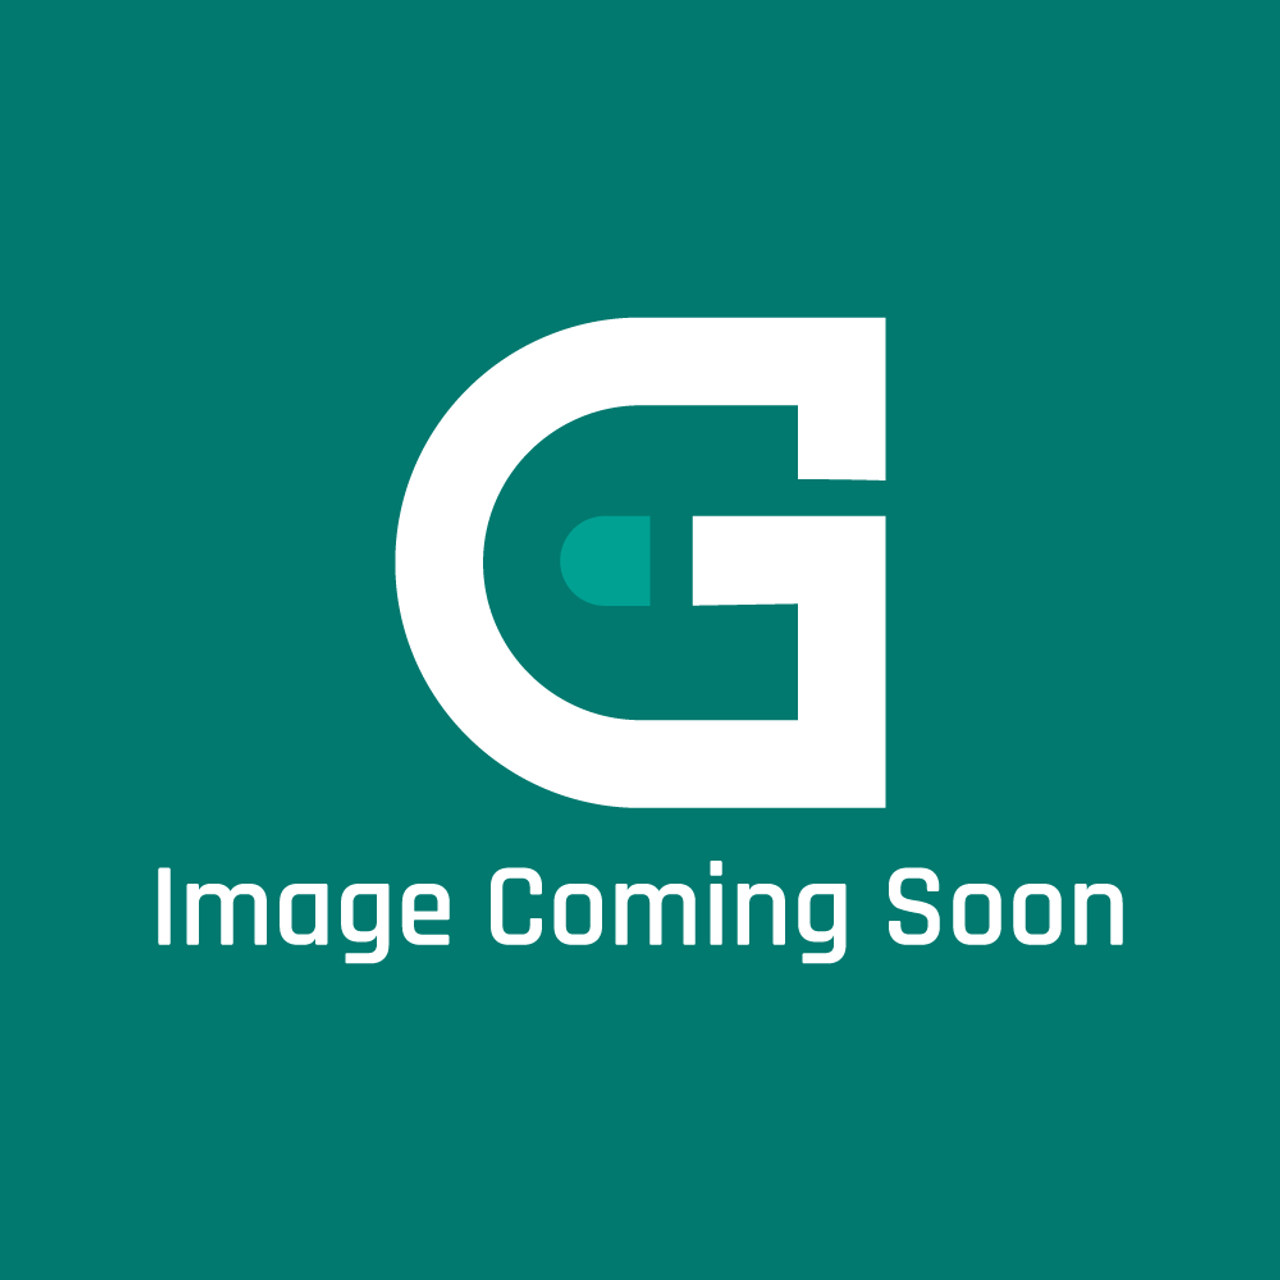 LG 3890W2L003T - Box - Image Coming Soon!